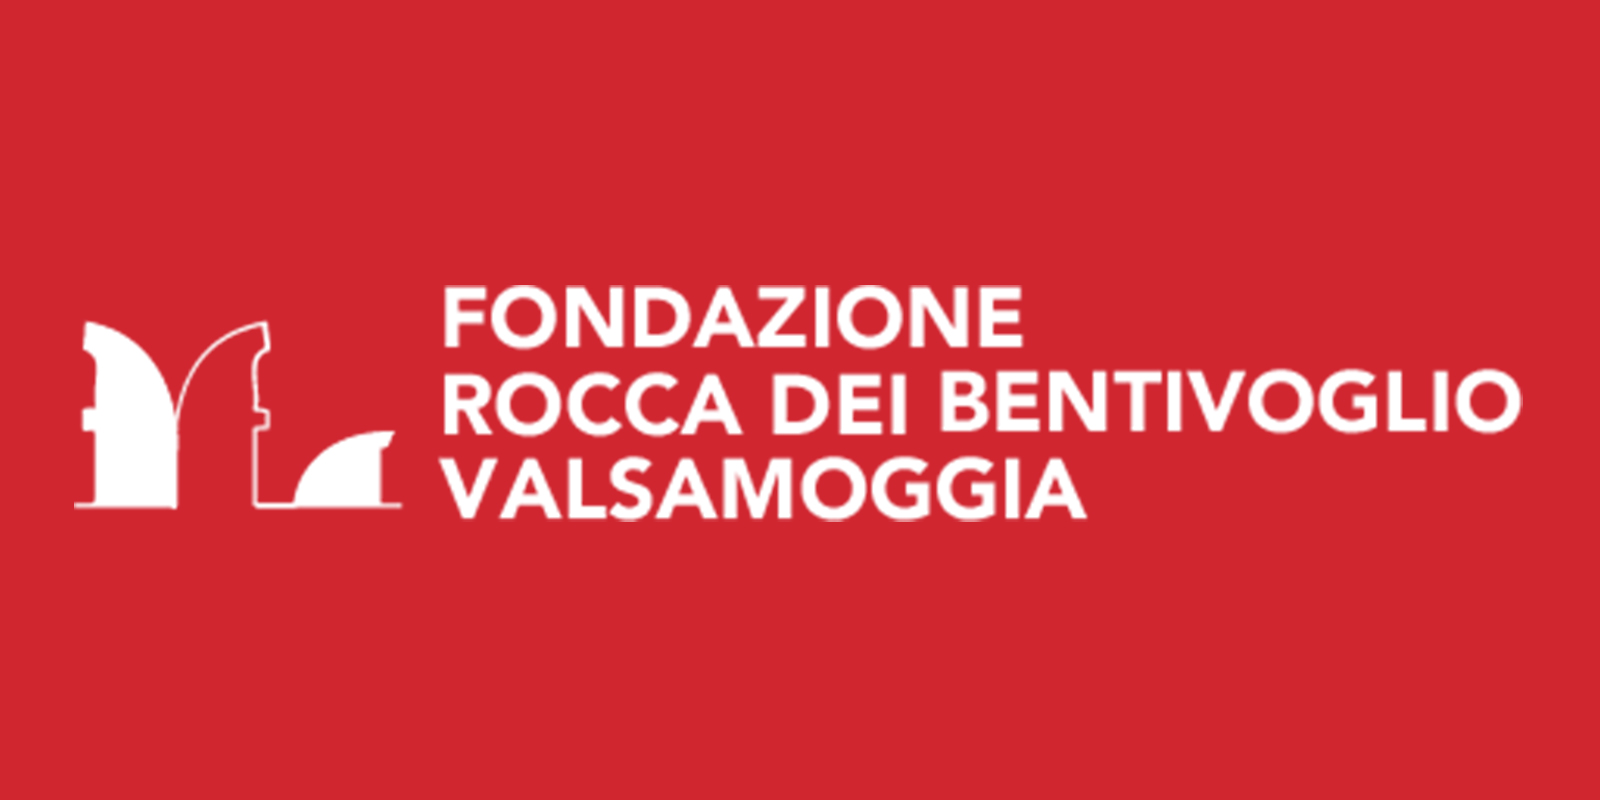 Fondazione Rocca dei Bentivoglio